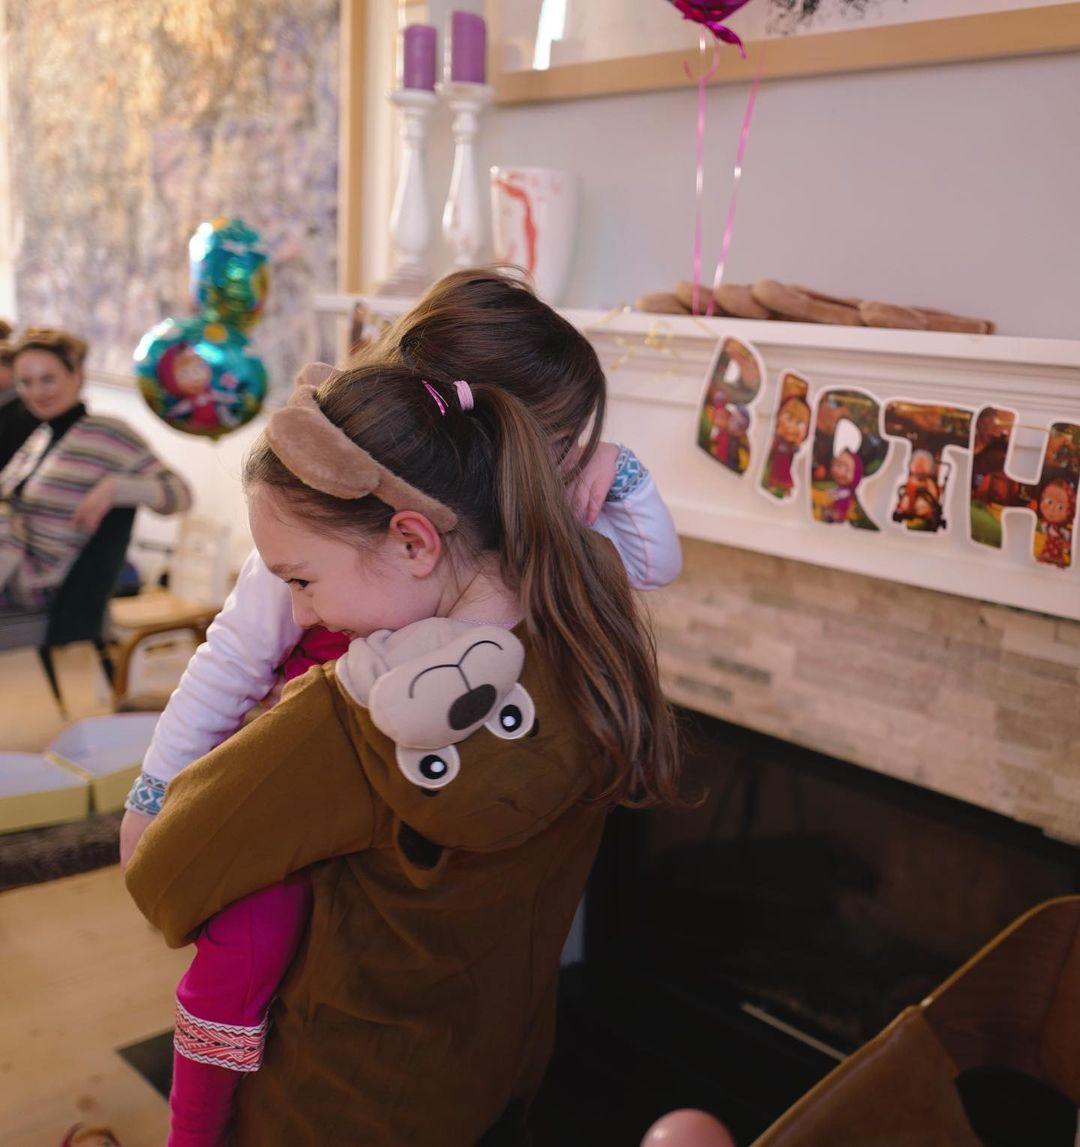  مريم أوزرلي تحتفل بعيد ميلاد ابنتها